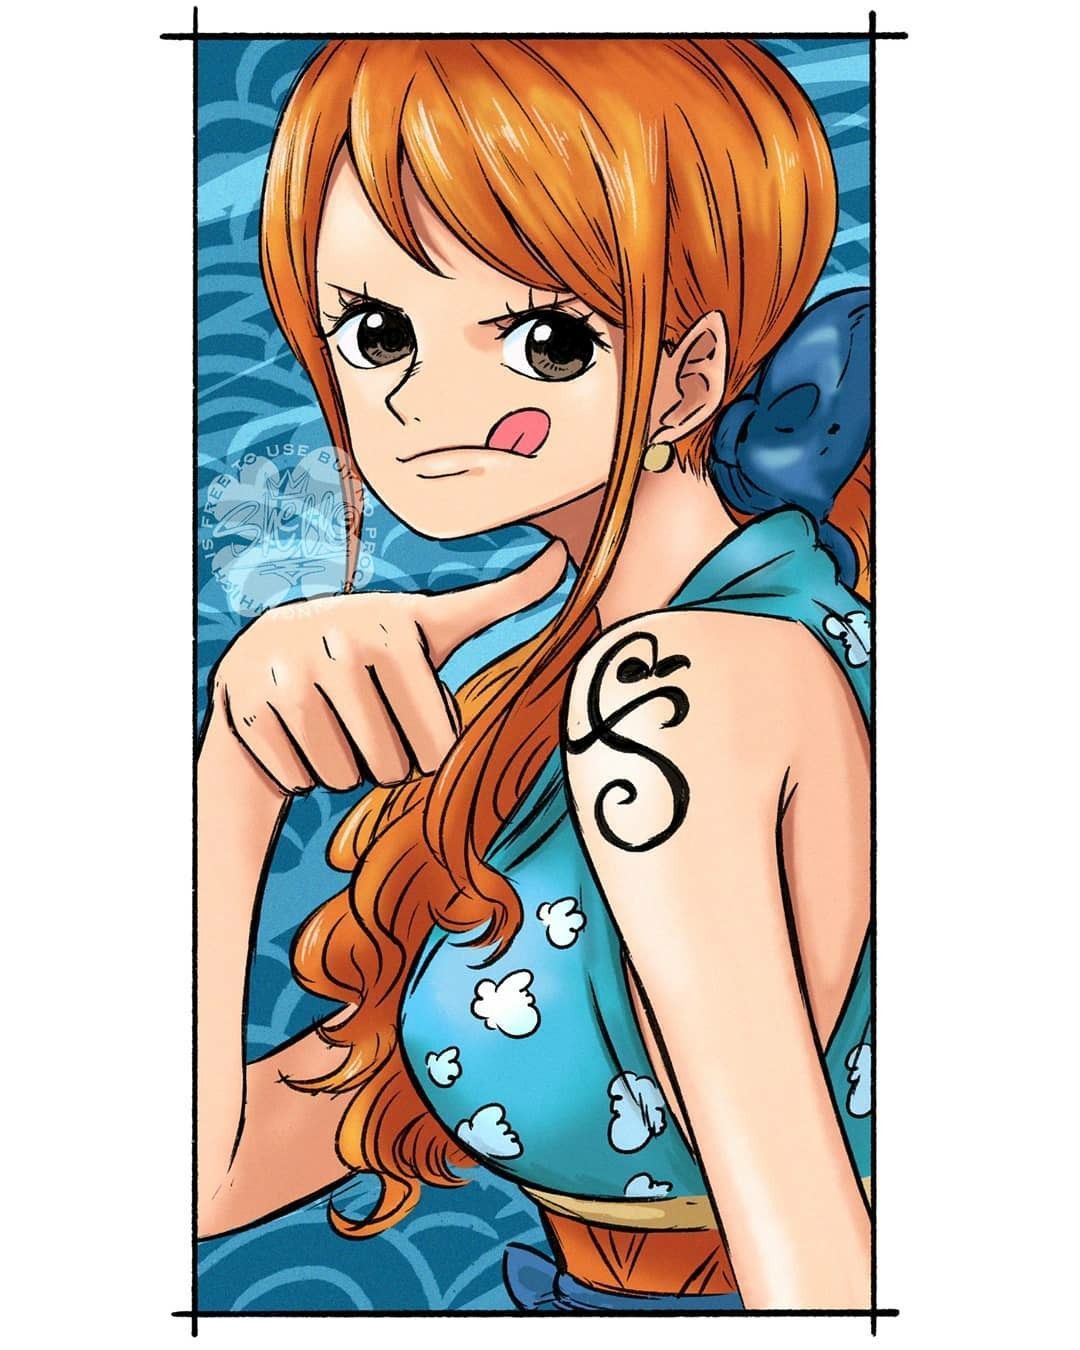 Nami-One Piece. One piece nami, One piece manga, One piece anime